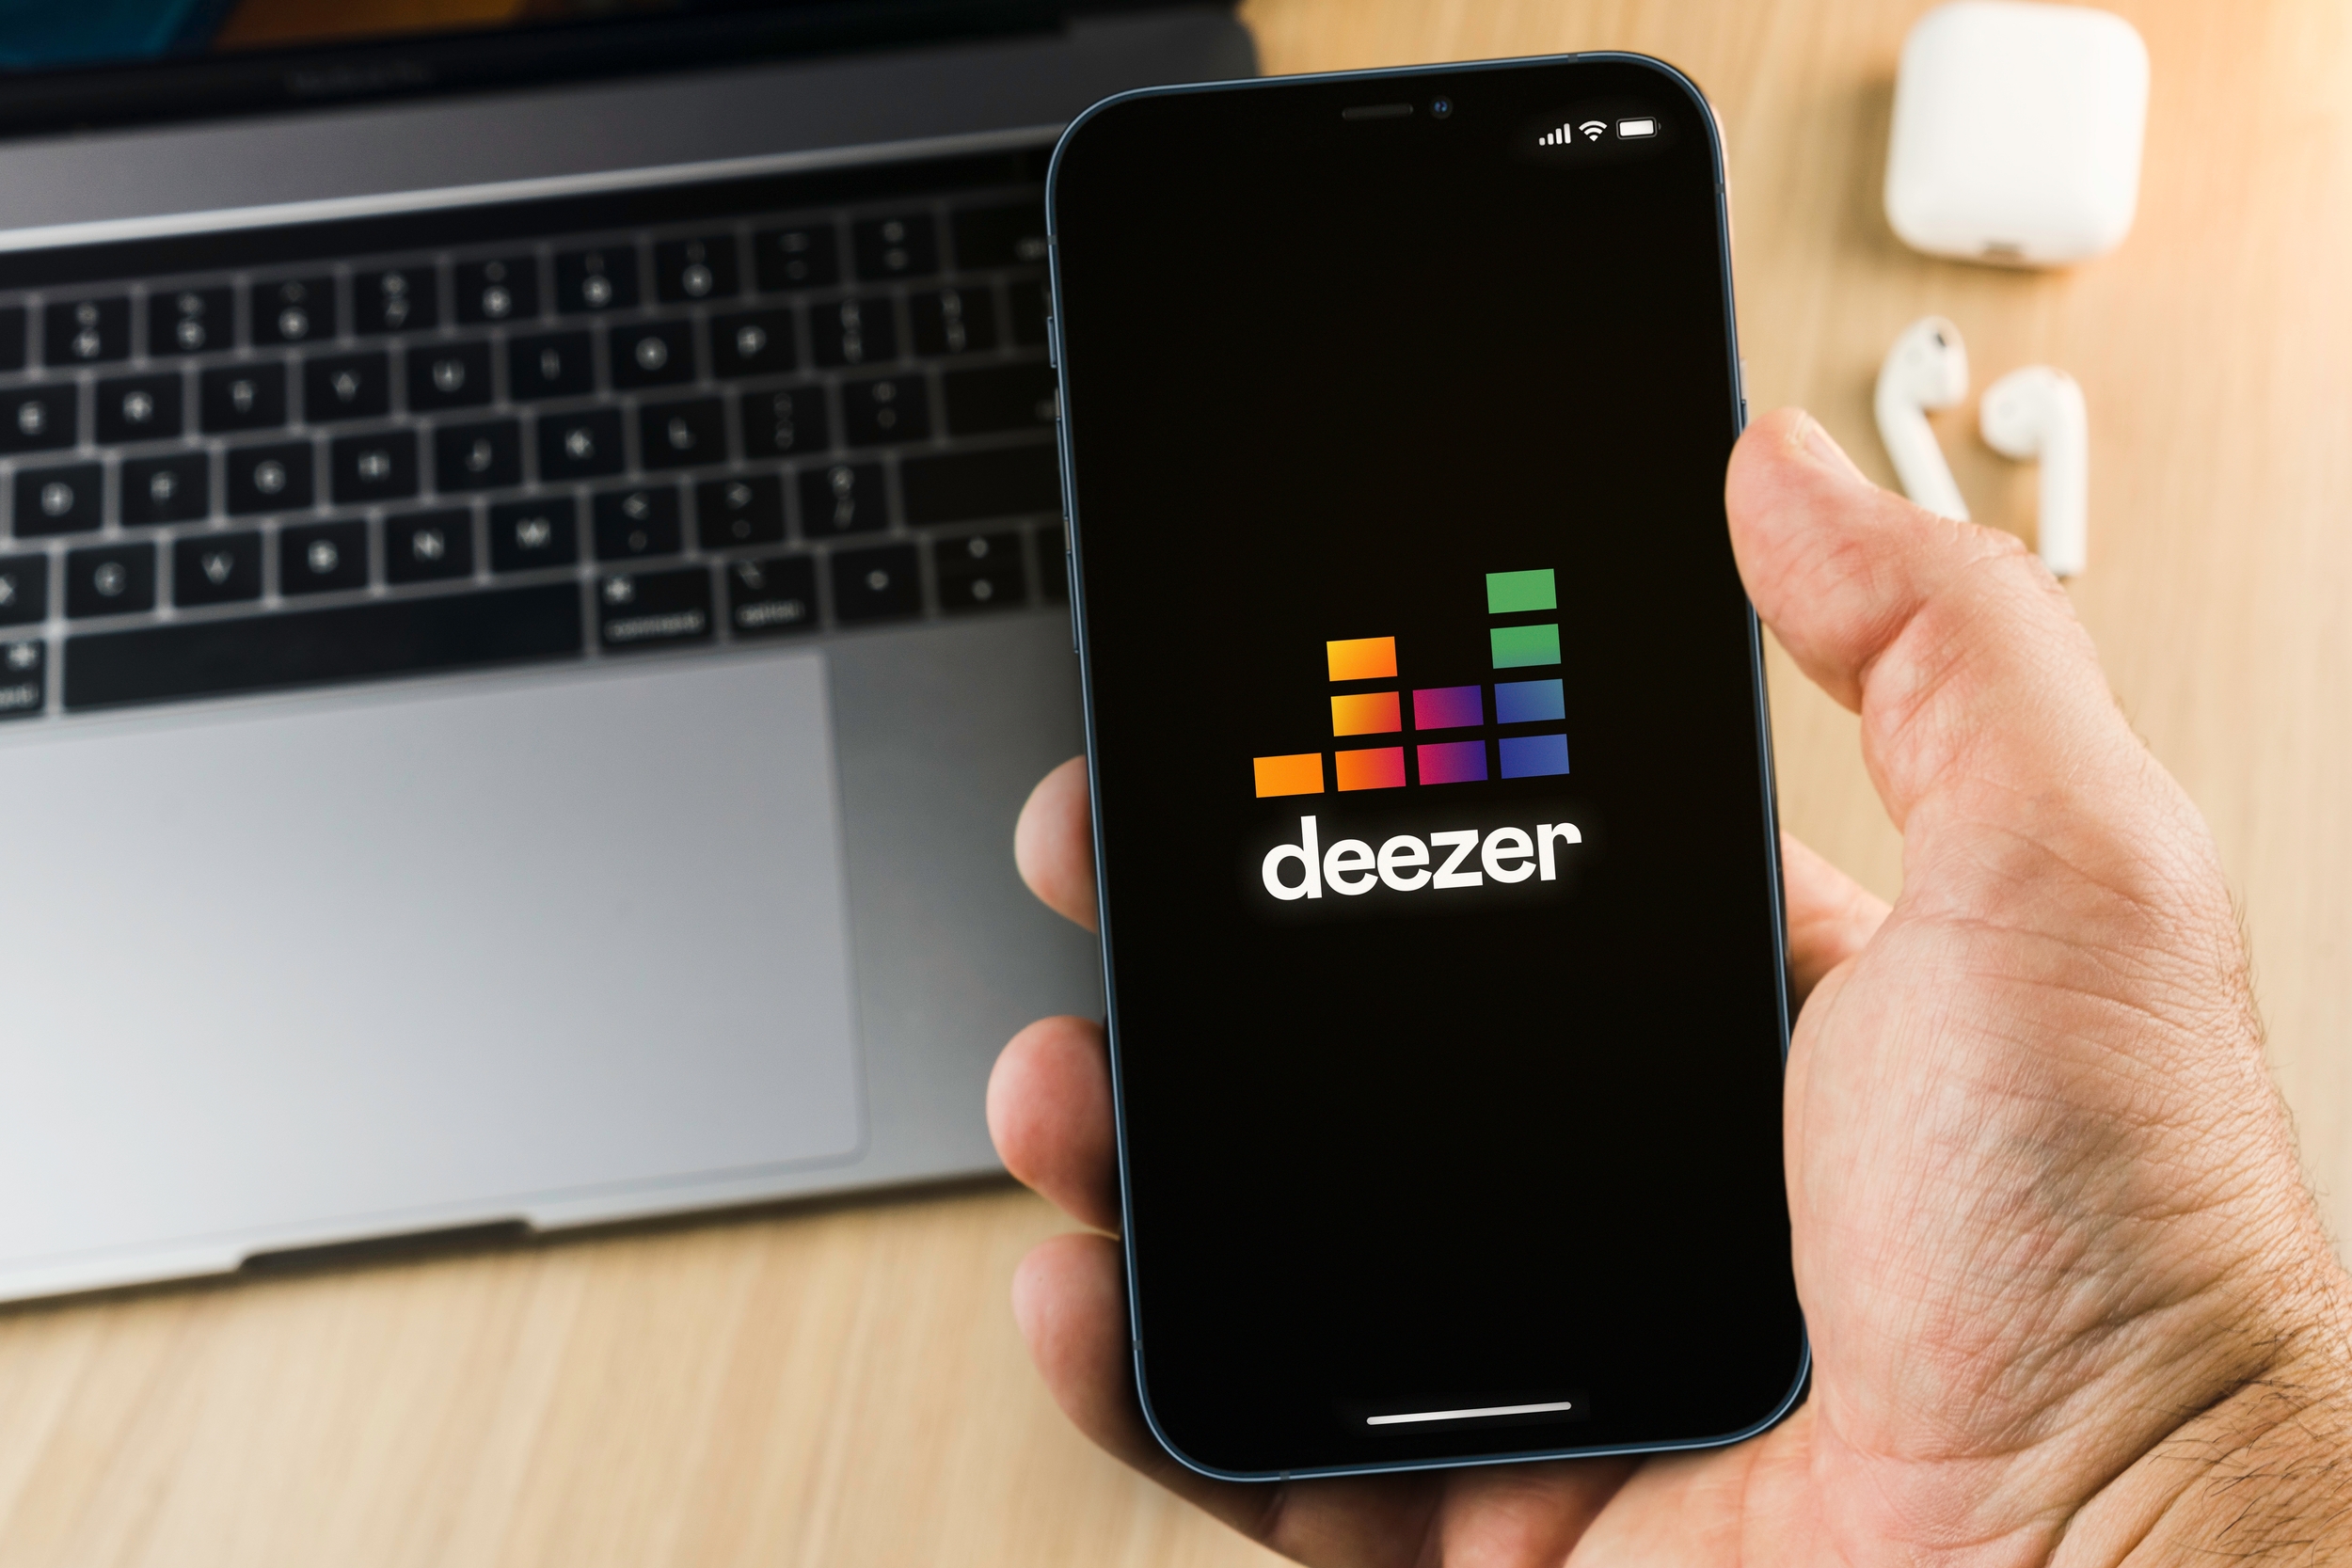 Deezer fait le ménage en supprimant 13% des titres disponibles sur sa plateforme de streaming musical